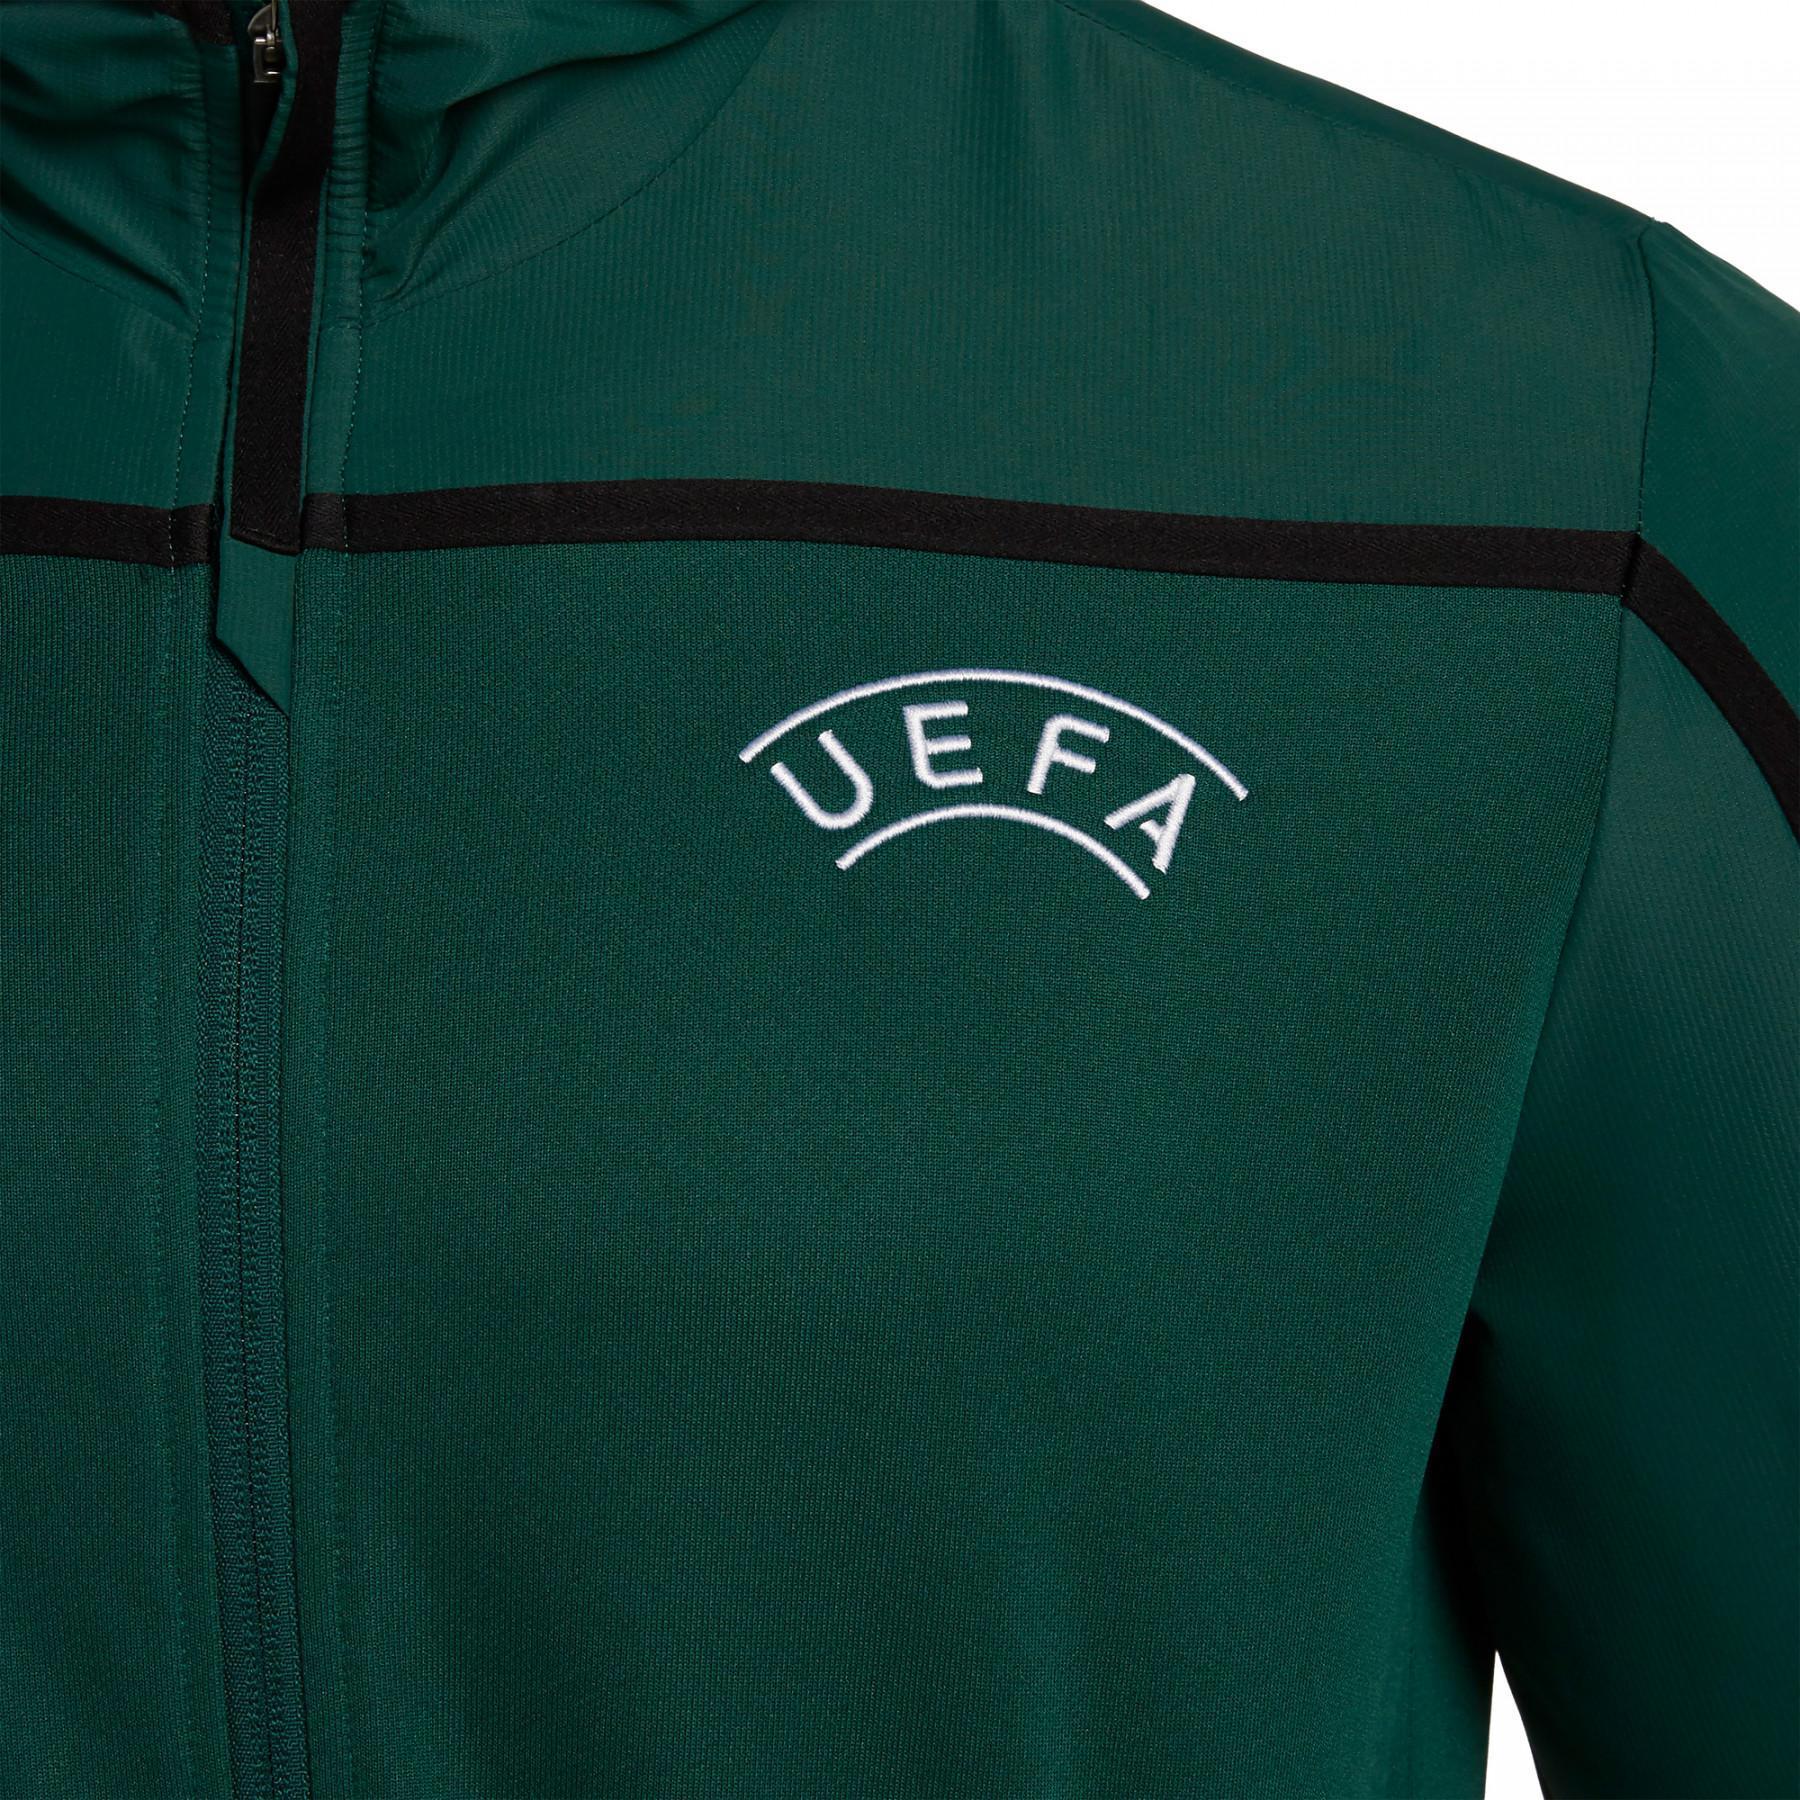 Bluza zapinana na zamek Macron UEFA 2019